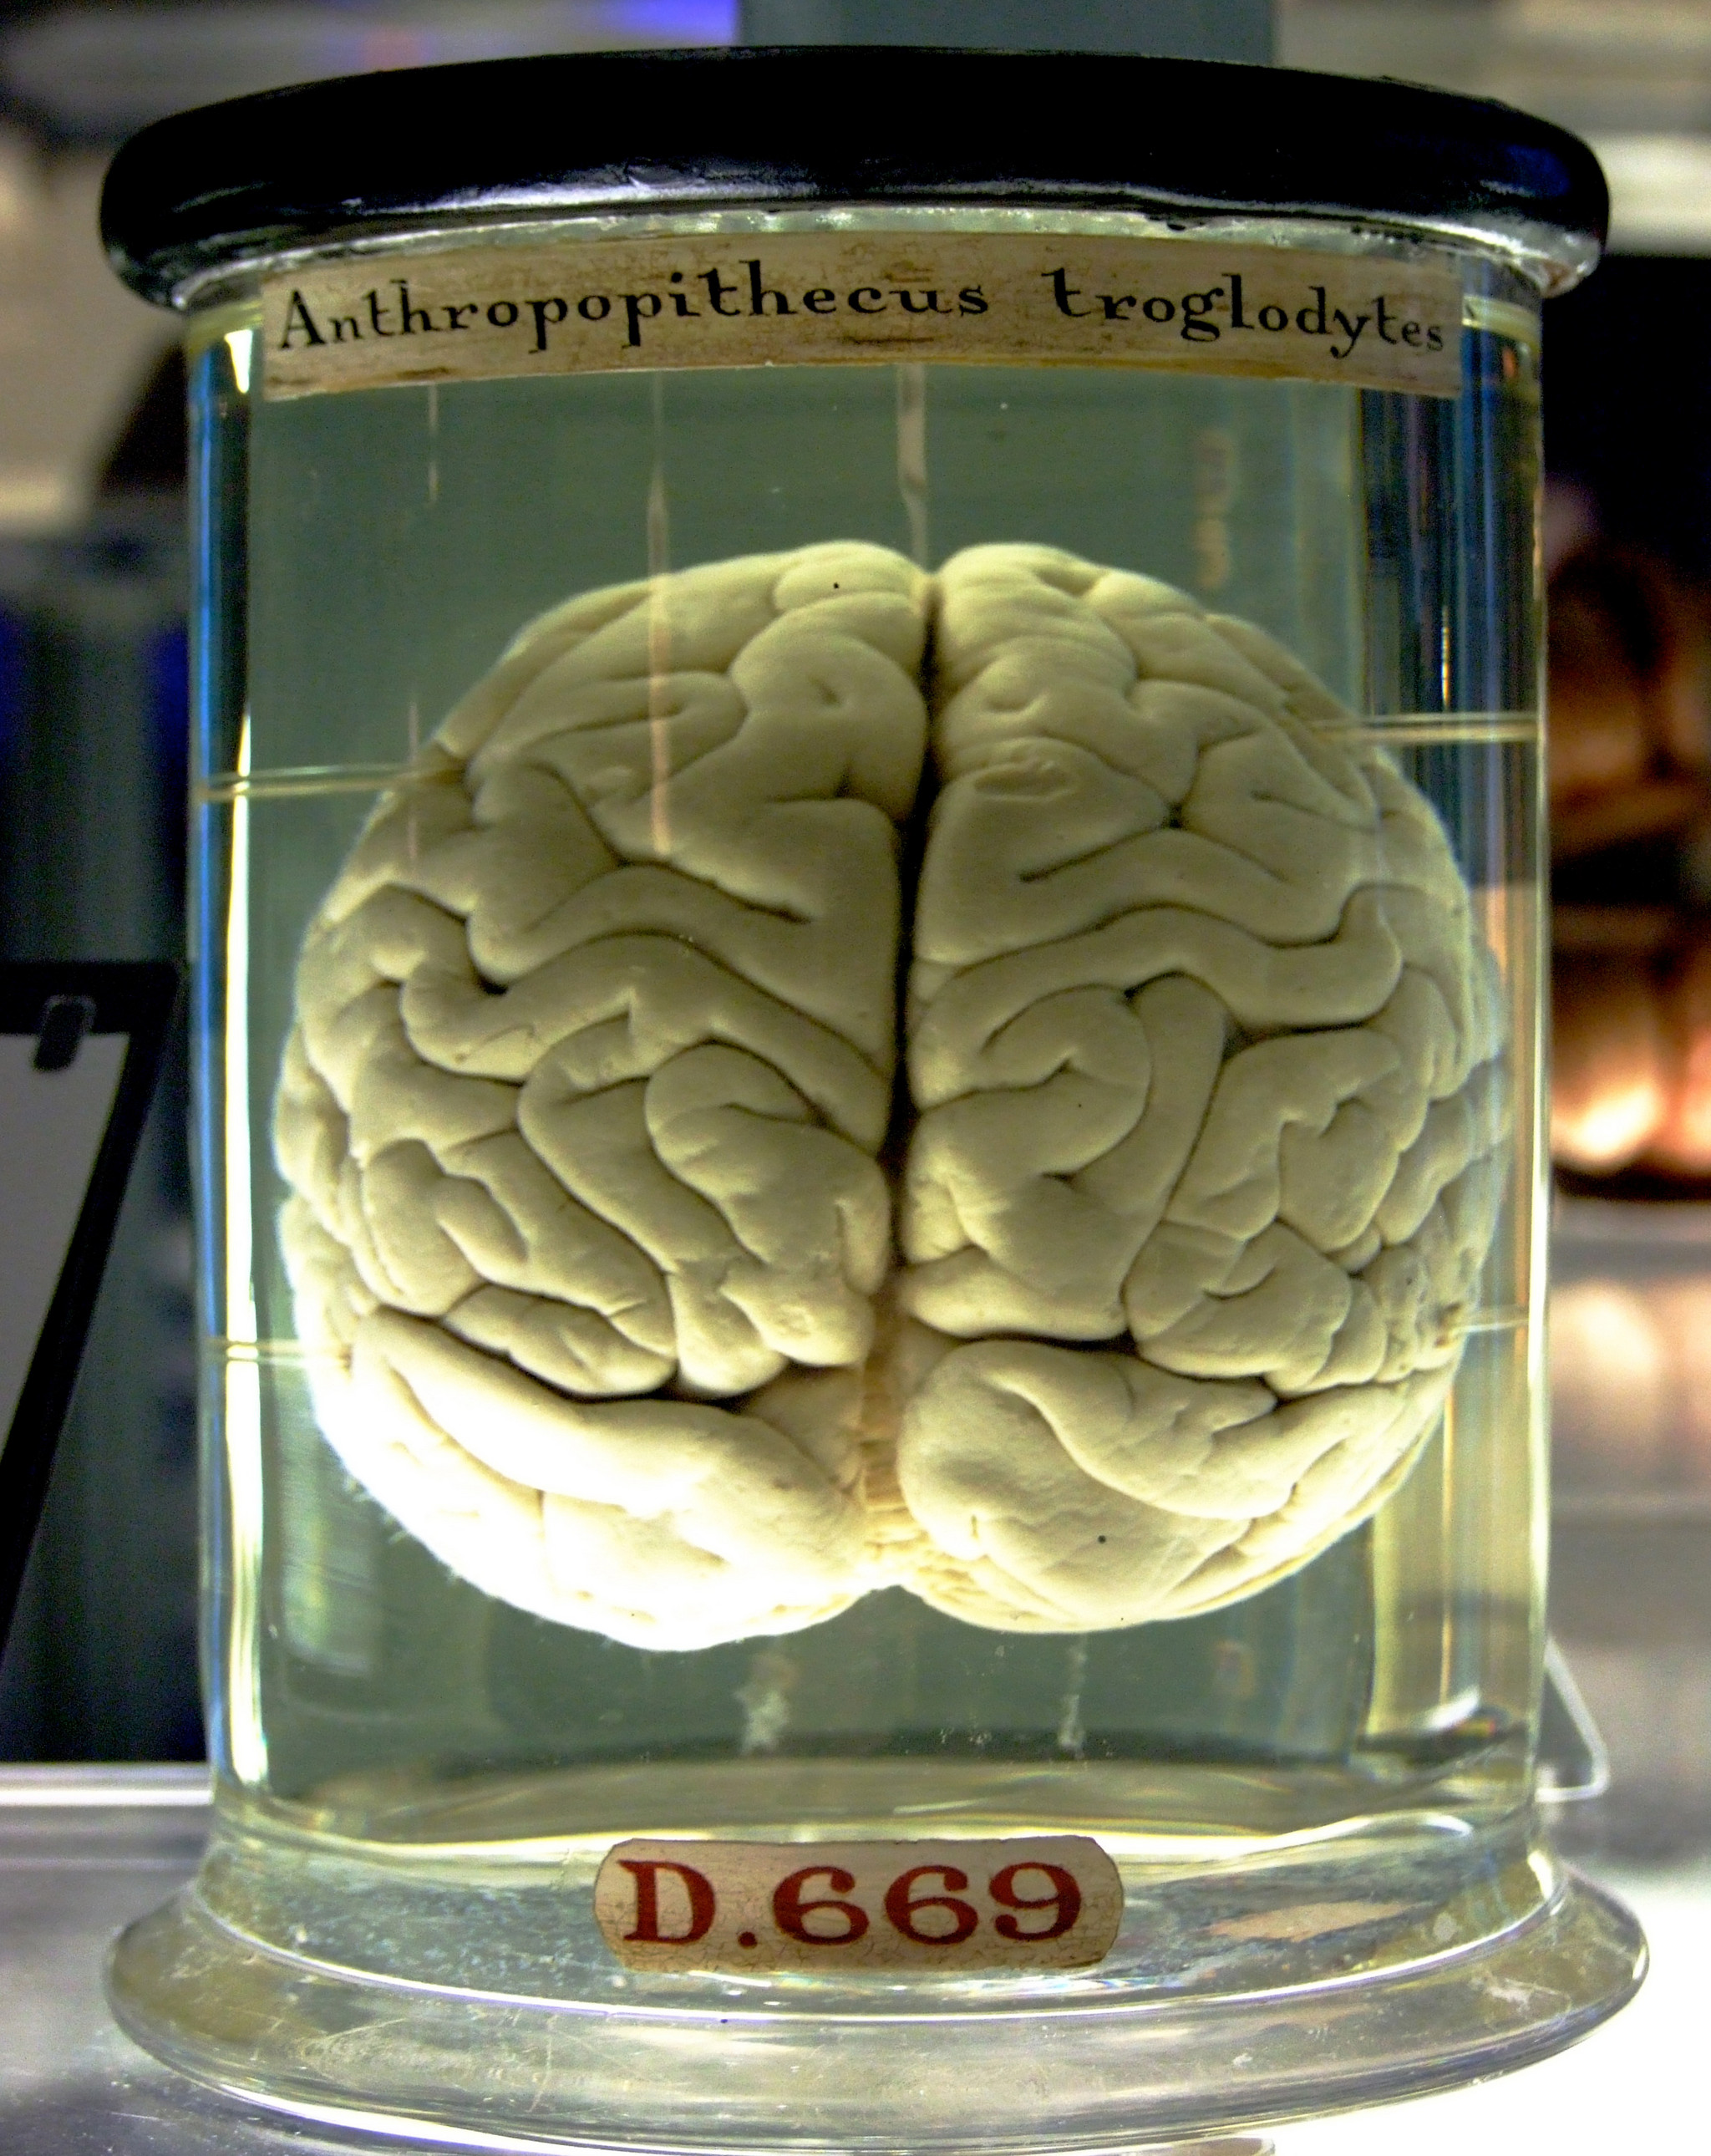 cerebro.jpg